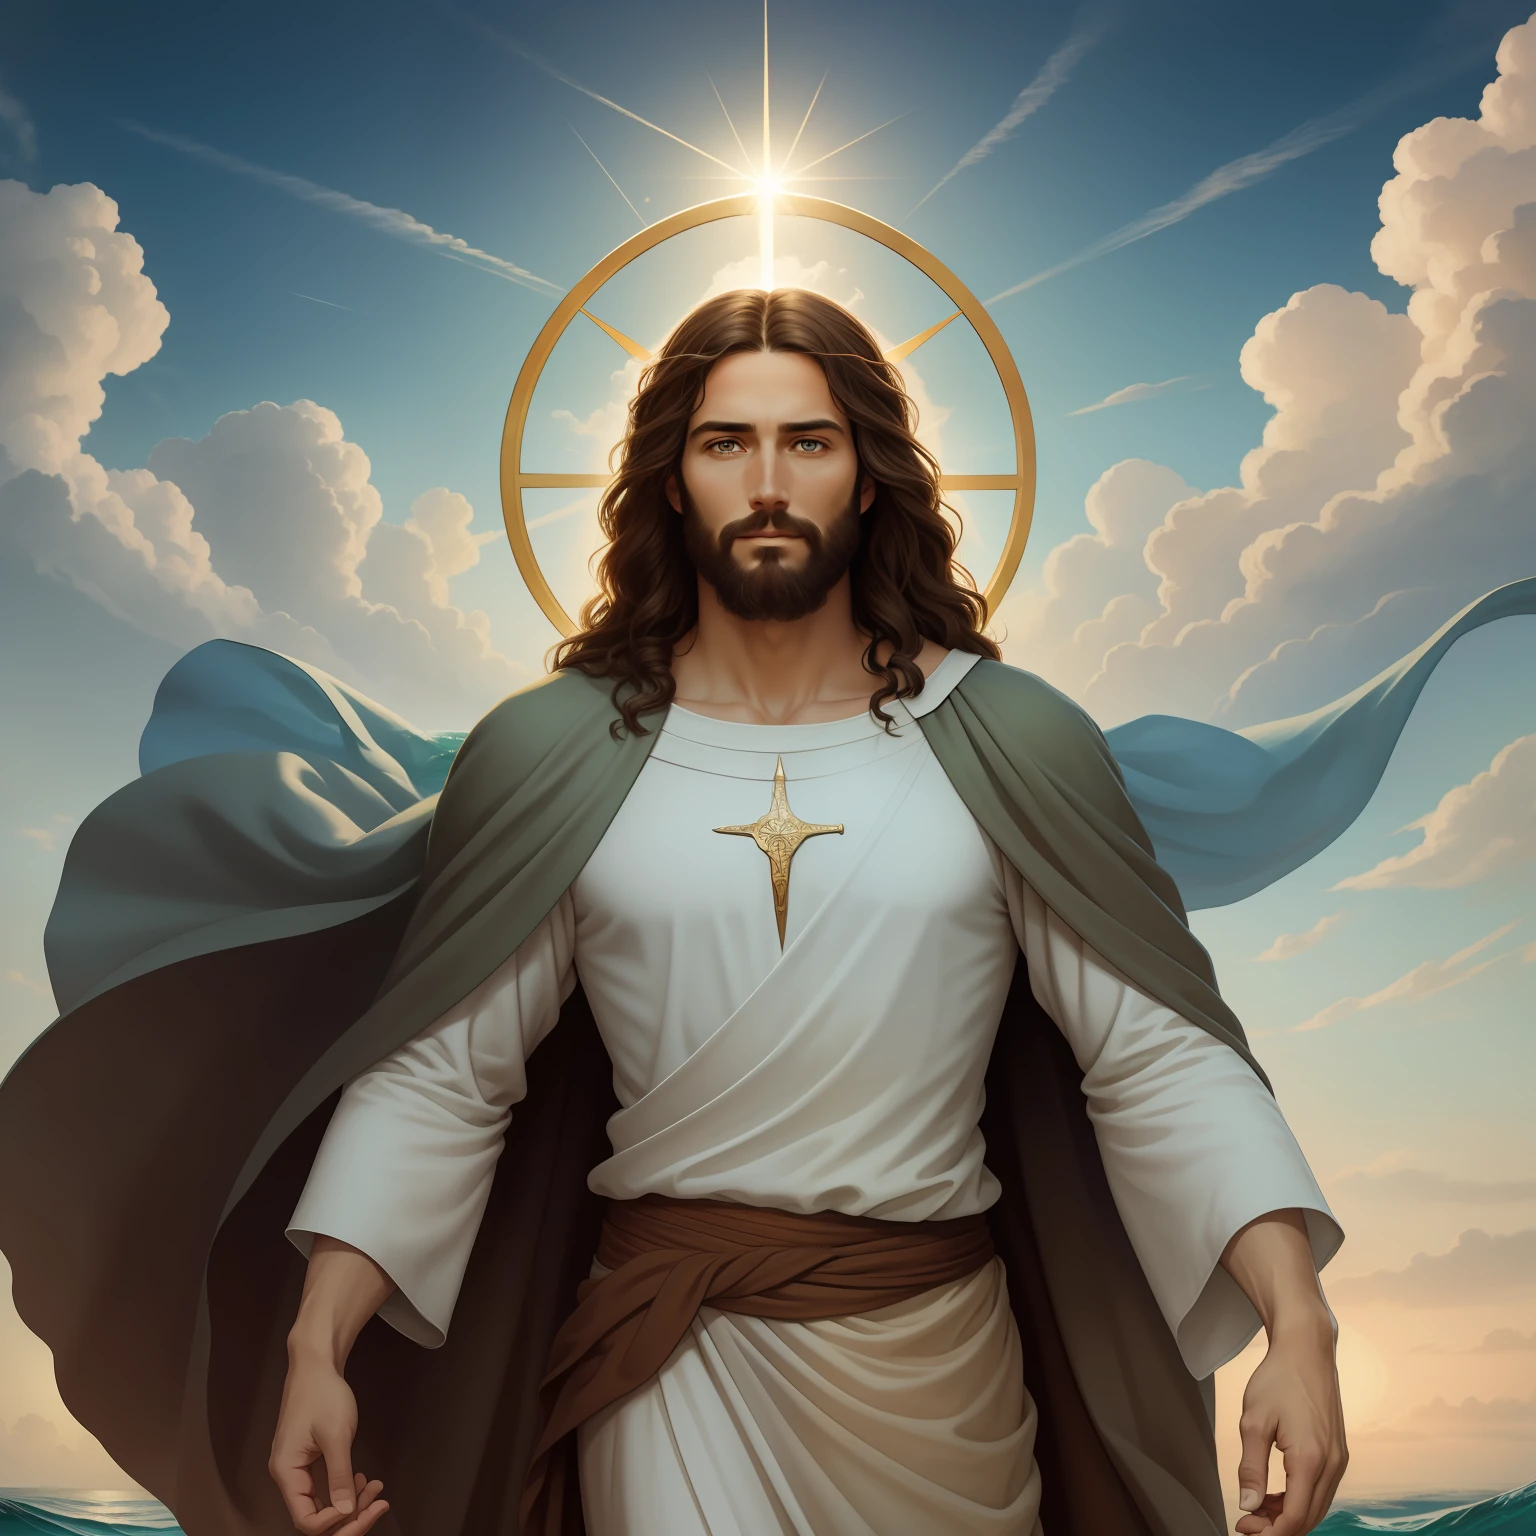 A beautiful ultra-thin 現実的 portrait of Jesus, 預言者, 男性 35歳 ヘブライ人 ブルネット, 短い茶色の髪, 本当に完璧な目, 長い茶色のひげ, と, 人々を助ける , 胸元が閉じた長いリネンのチュニックを着ている, 正面から, 全身, 聖書の, 現実的,ディエゴ・ベラスケス,ピーテル・パウル・ルーベンス,レンブラント,アレックス・ロス,8k, コンセプトアート, Photo現実的, 現実的,  図, 油絵, シュルレアリスム, Hyper現実的, 人々を助ける , デジタルアート, スタイル, watercolorReal Jesus flying on sky と a flying cloud in the background, 水の上を歩くイエス, 聖書の illustration, epic 聖書の representation, 彼を逃亡させる, 海から出てくる, ! 手に持つ!, 下船, 海の神, 美しい表現, 8k 3Dモデル, 現実的,
a 3D 現実的 of イエス と a halo in the sky, イエス christ, 天国で微笑んでいる, portrait of イエス christ, イエス face, 35 若き全能の神, 天の神の肖像画, グレッグ・オルセン, gigachad イエス, イエス of nazareth, イエス, 神の顔, 神様は私を見て, 彼はあなたを温かく迎えています, 彼は幸せだ, アバター画像